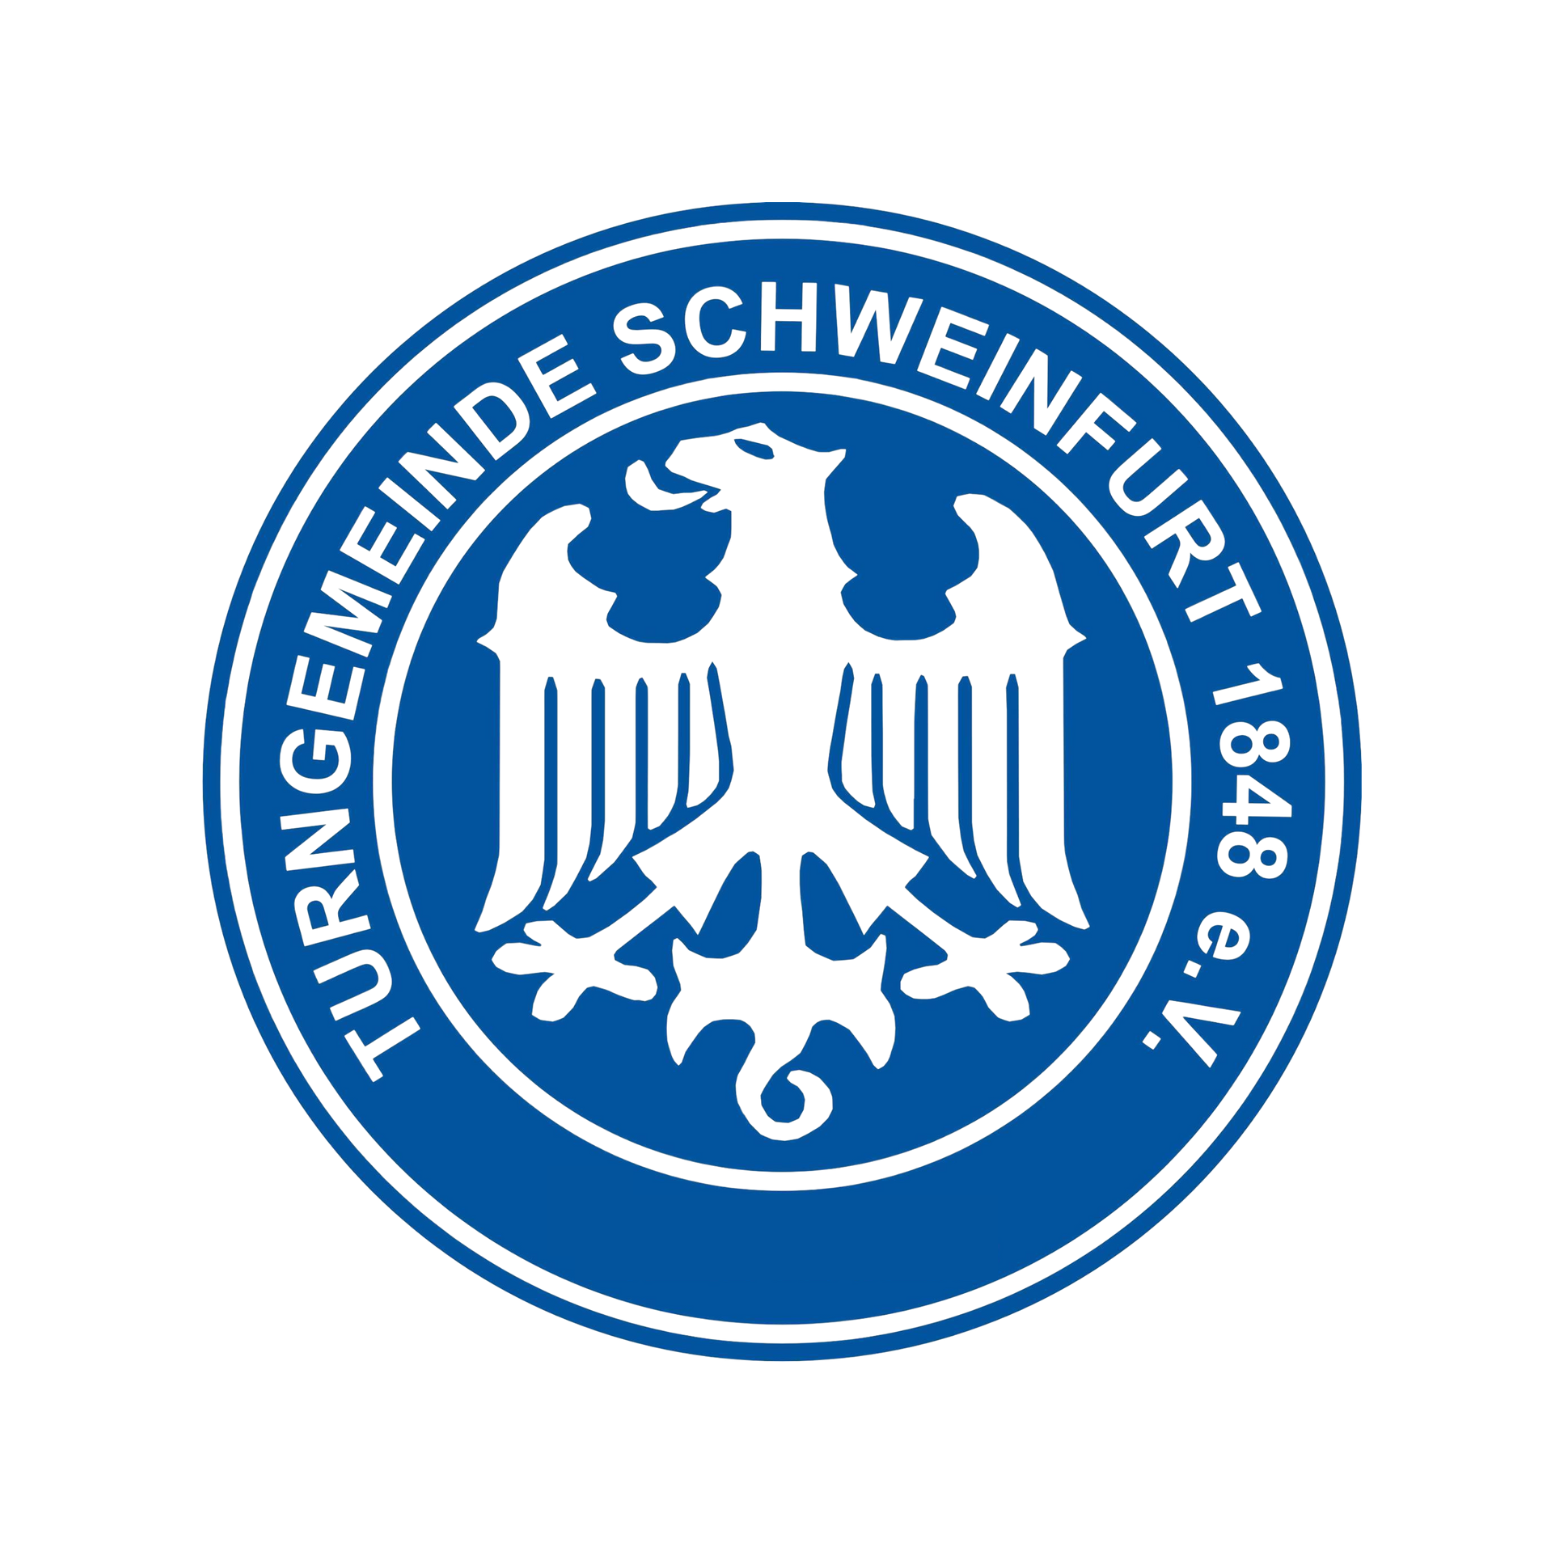 Turngemeinde Schweinfurt 1848 Logo